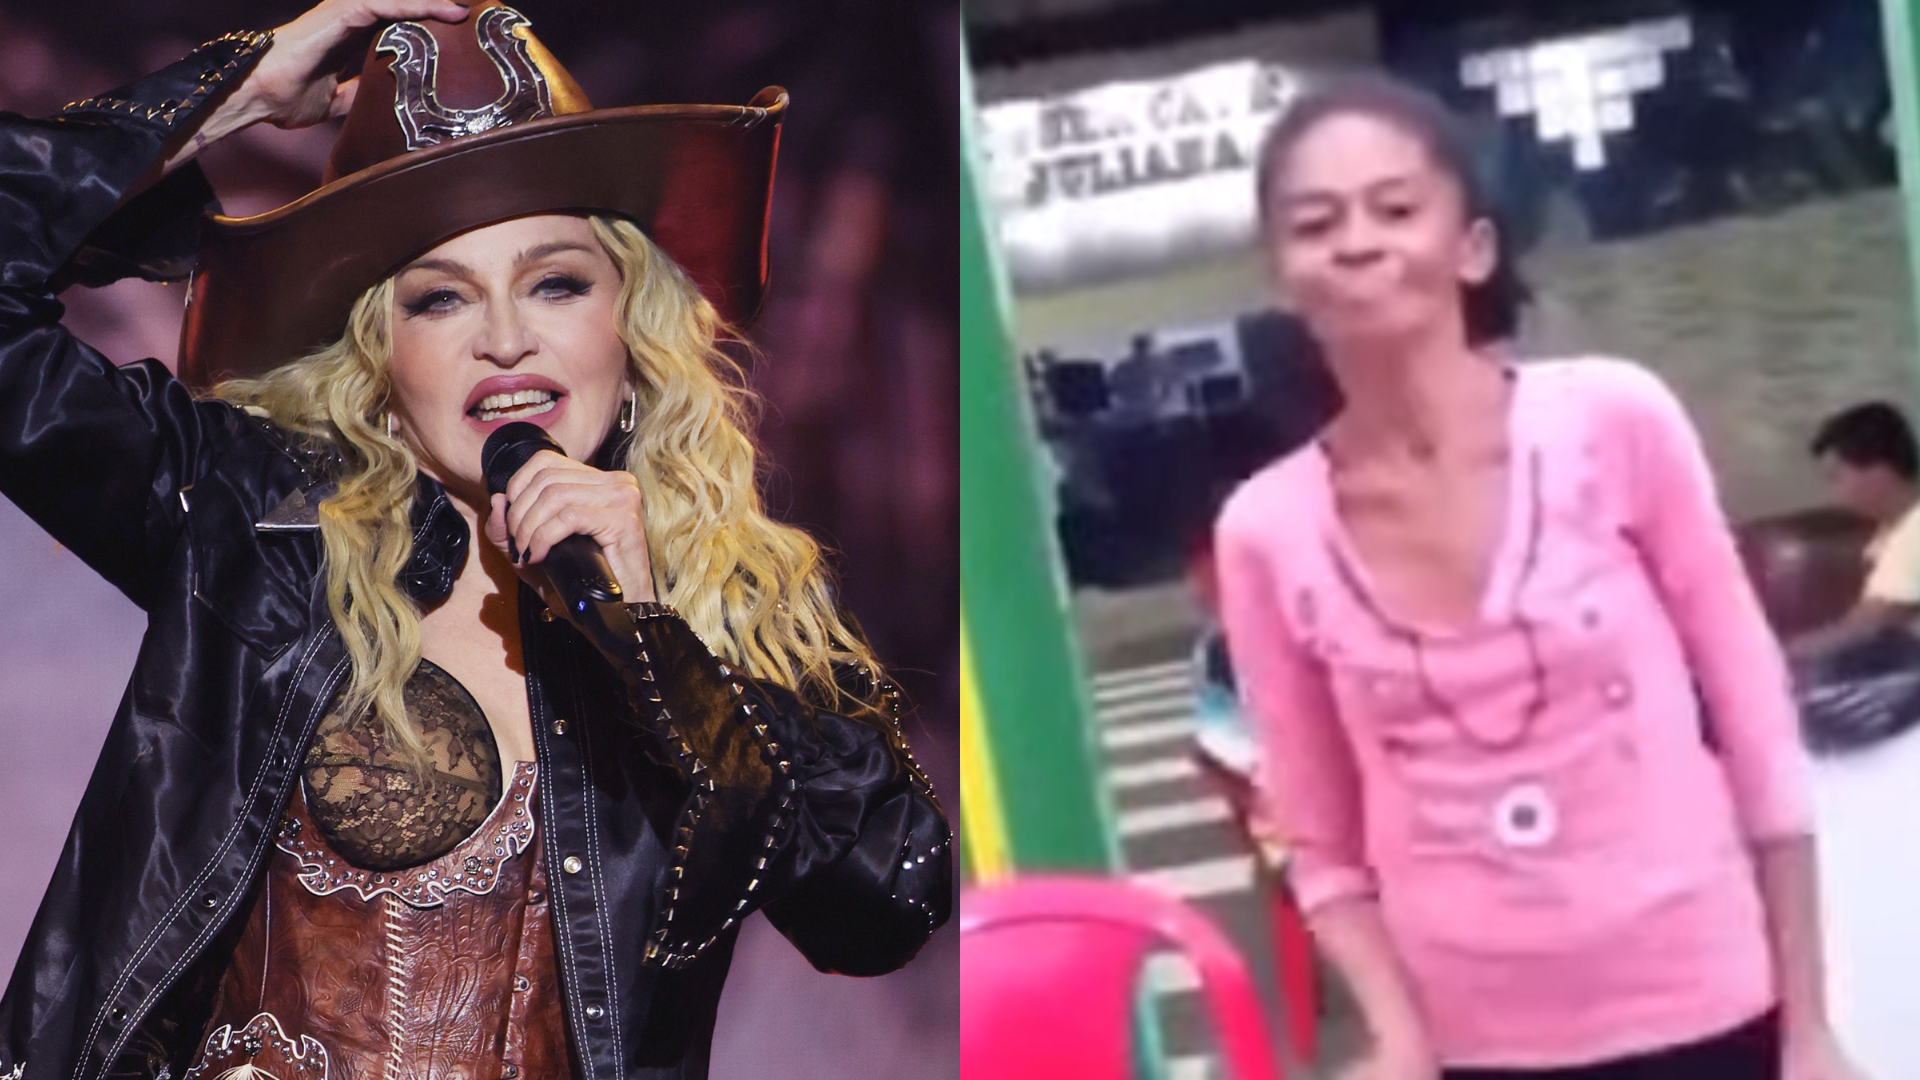 Como está “Marina Silva de Manaus”?! Fã notada por Madonna largou as drogas, voltou a estudar e agora sonha em conhecê-la